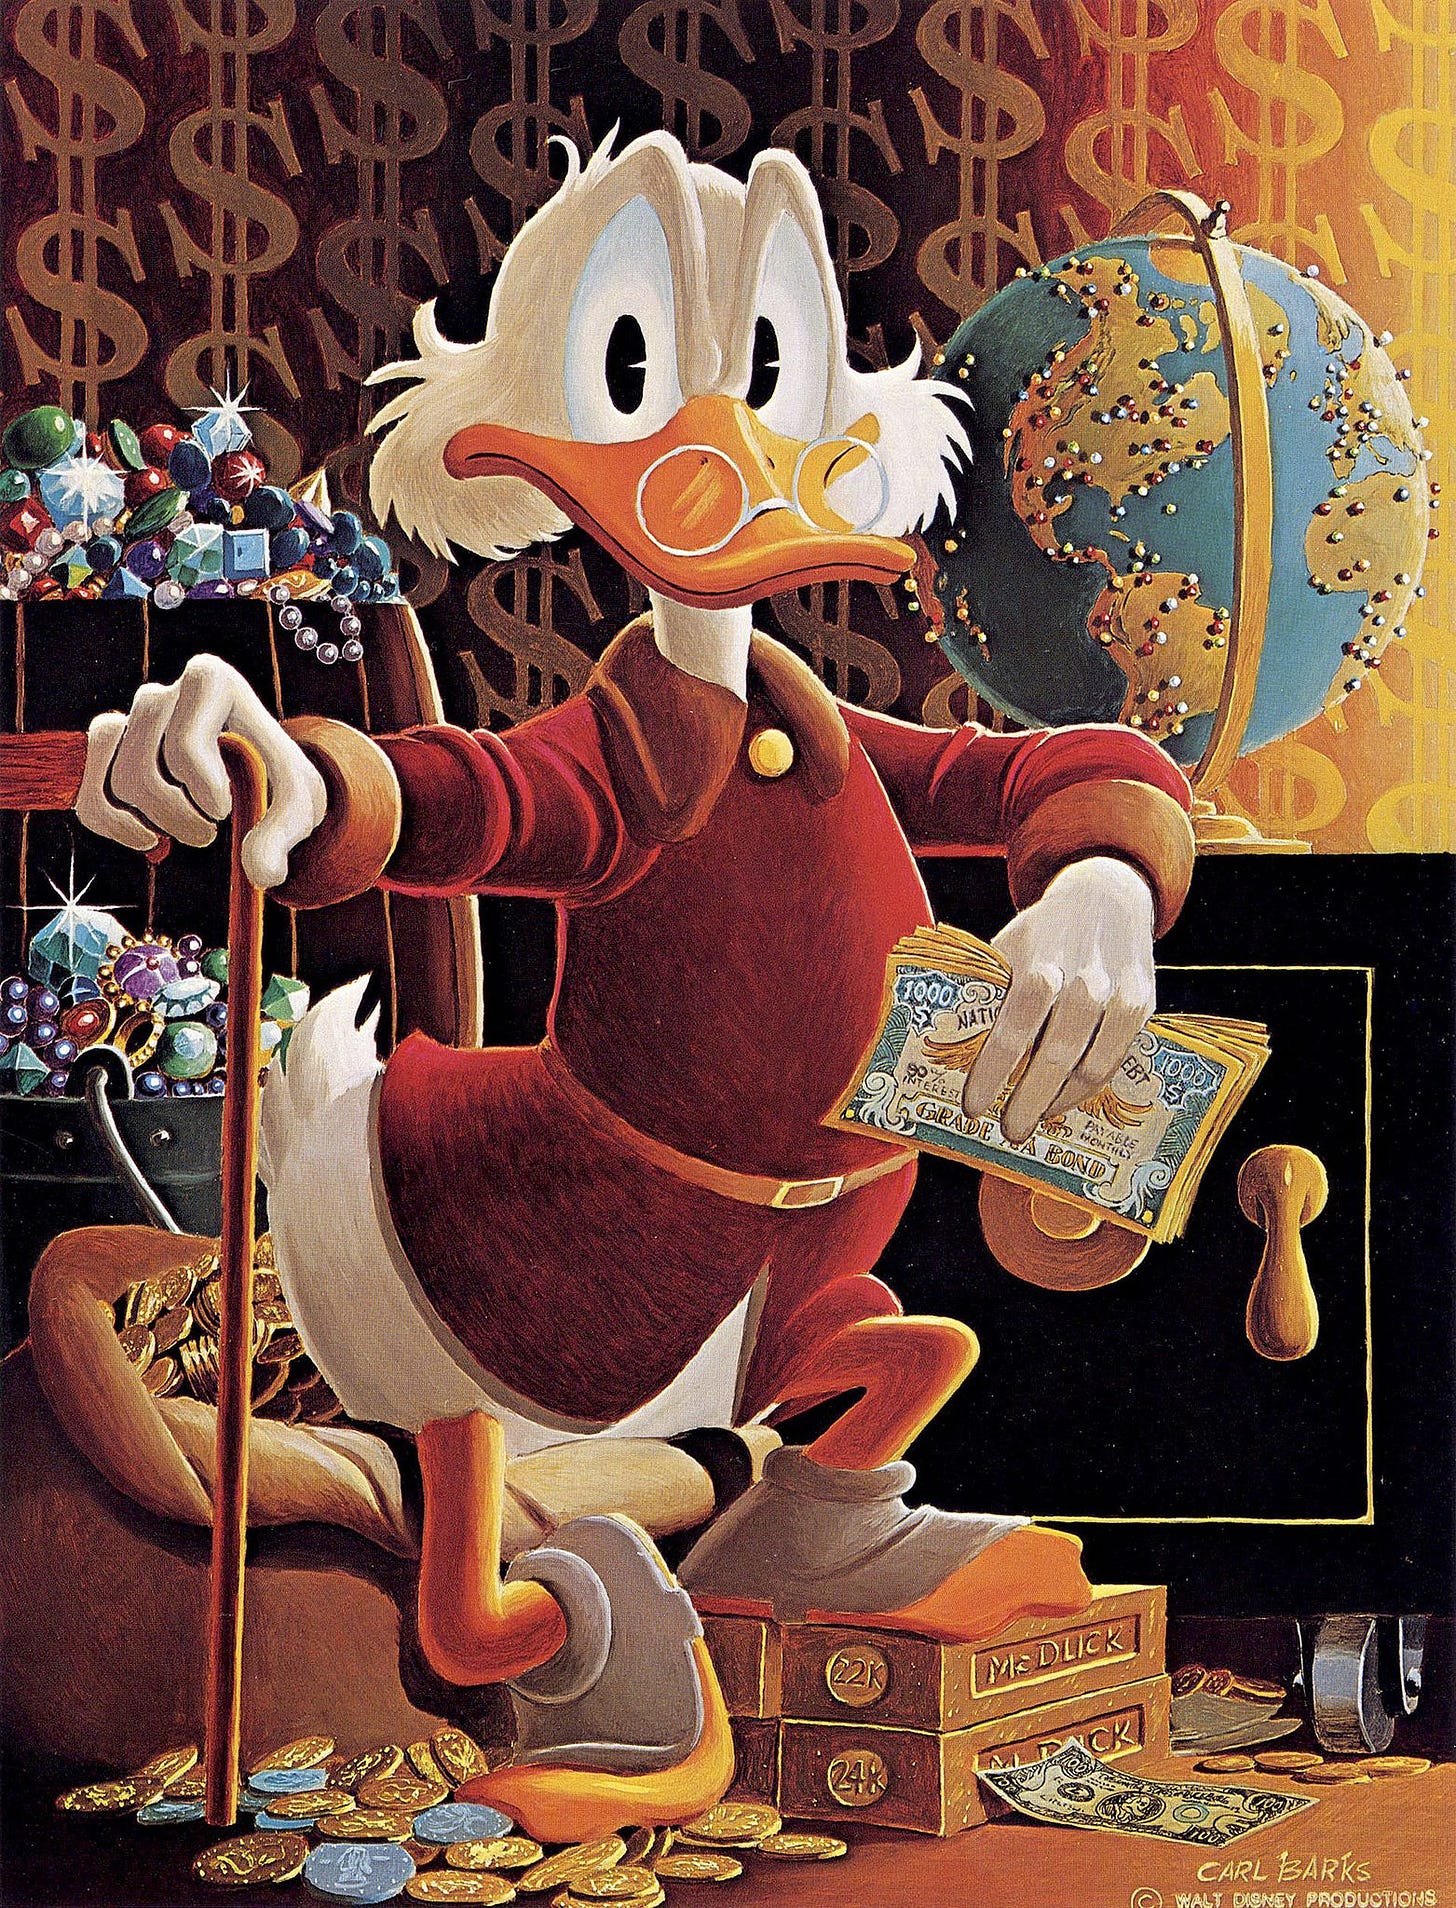 McDuck of Duckburg | Disney wallpaper, Scrooge mcduck, Disney art